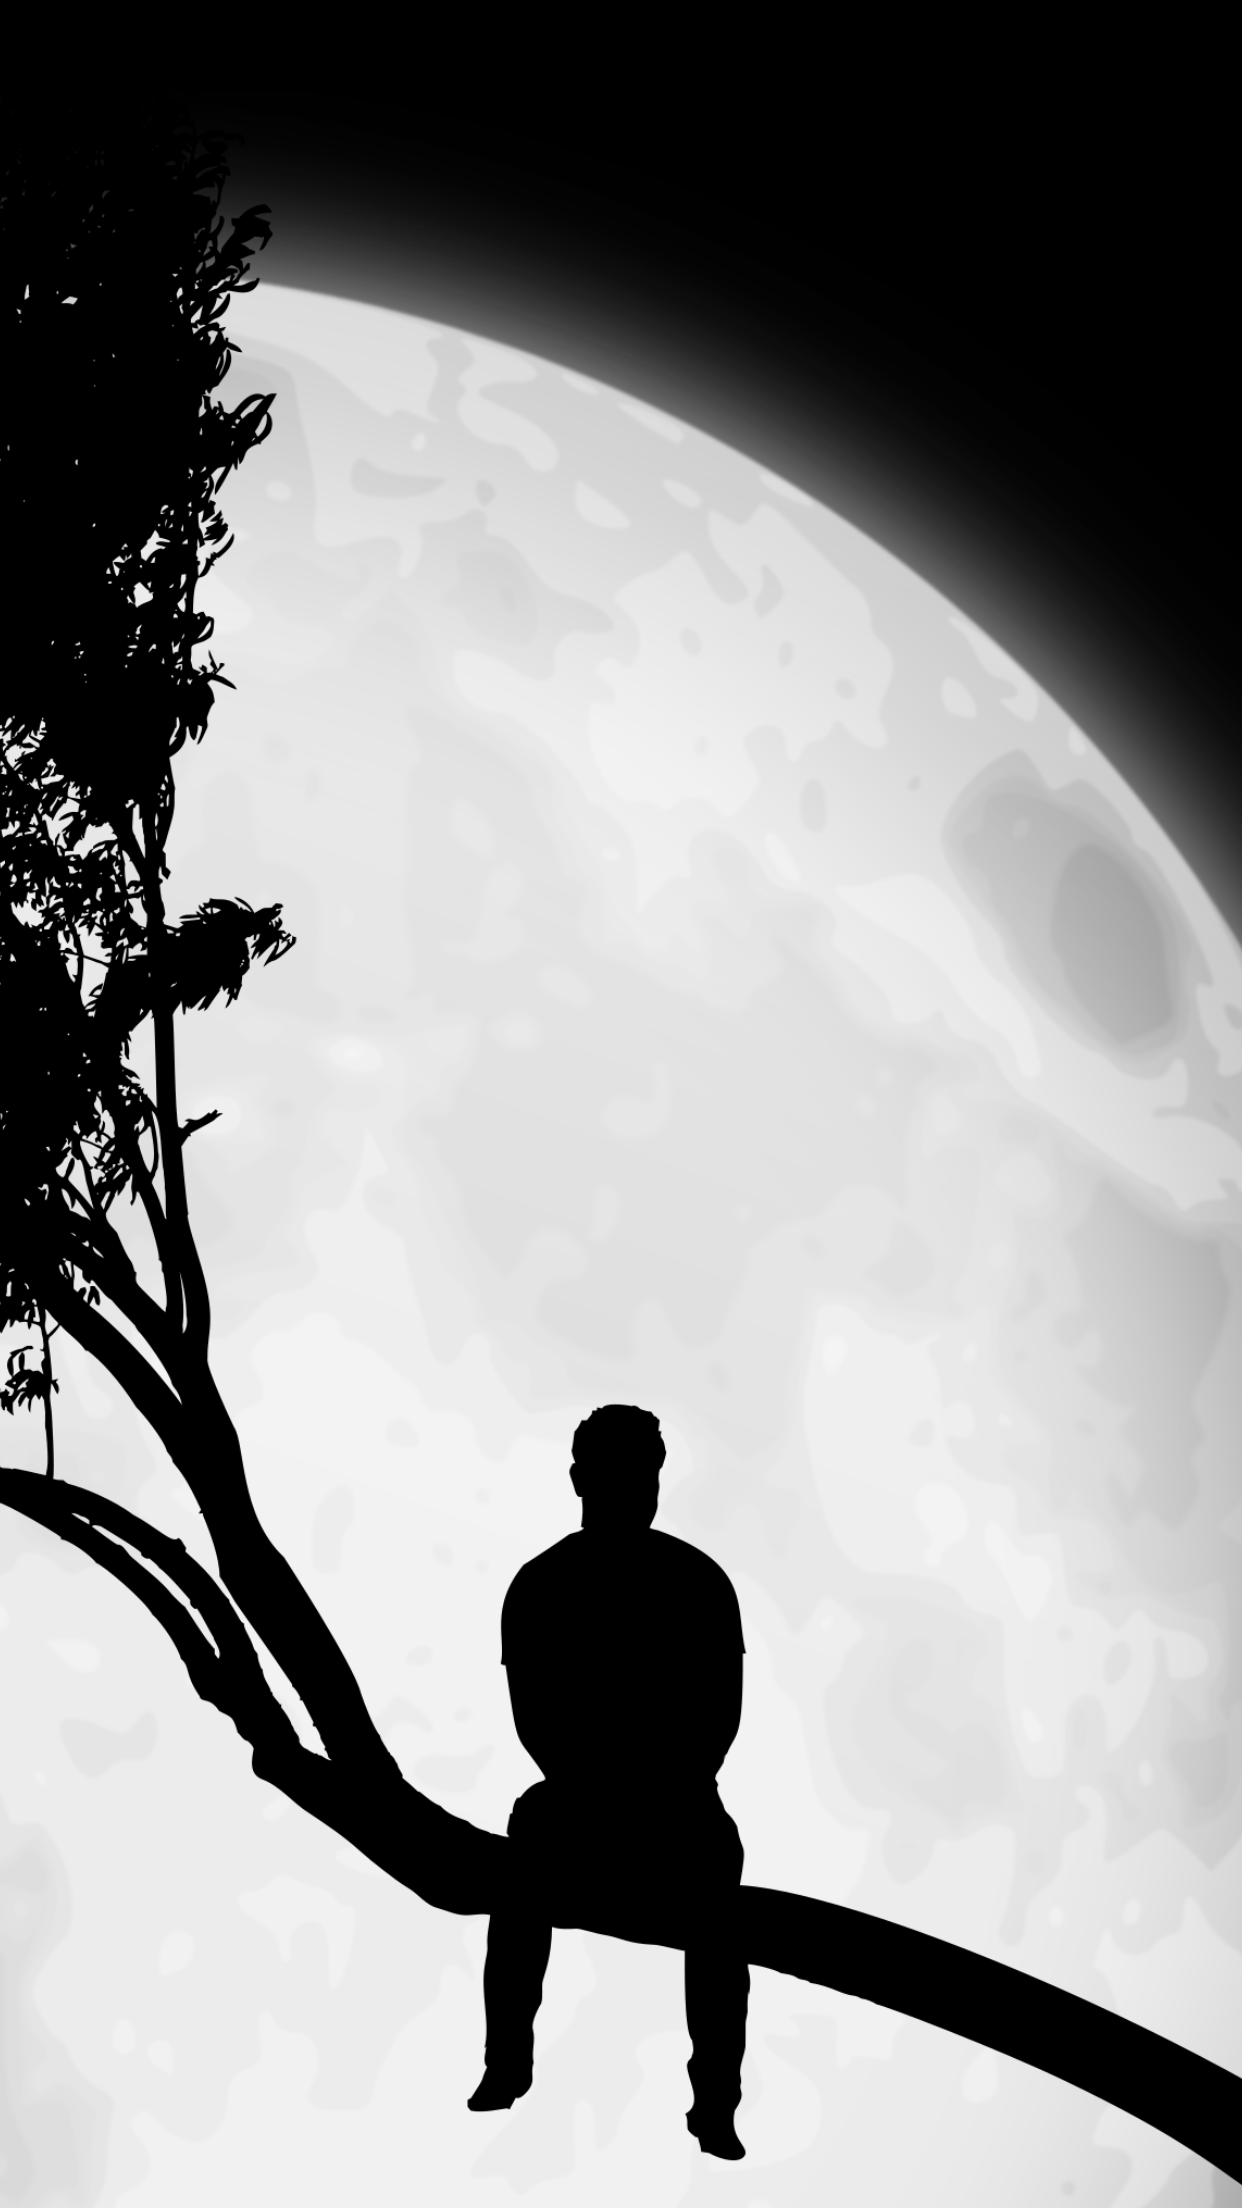 carta da parati ragazzo triste solitario,cielo,bianco e nero,fotografia in bianco e nero,atmosfera,silhouette